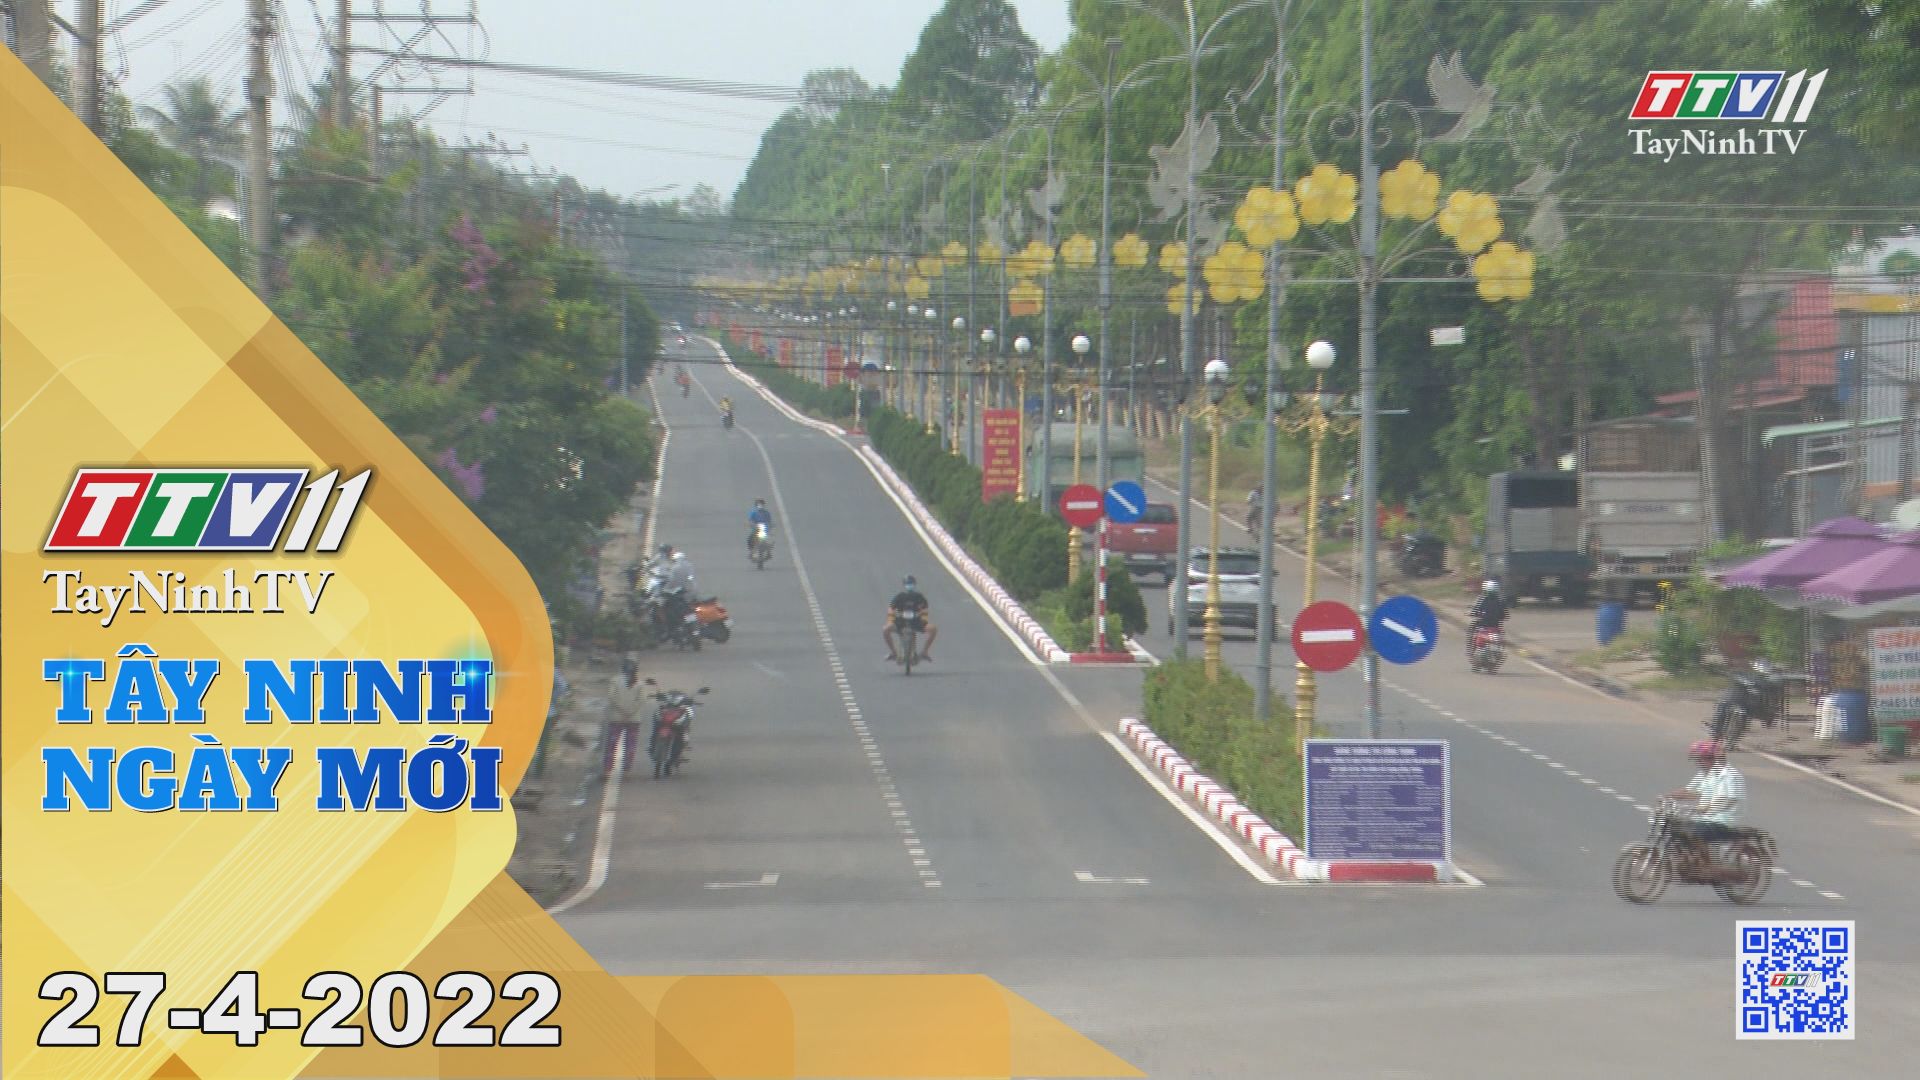 Tây Ninh ngày mới 27-4-2022 | Tin tức hôm nay | TayNinhTV